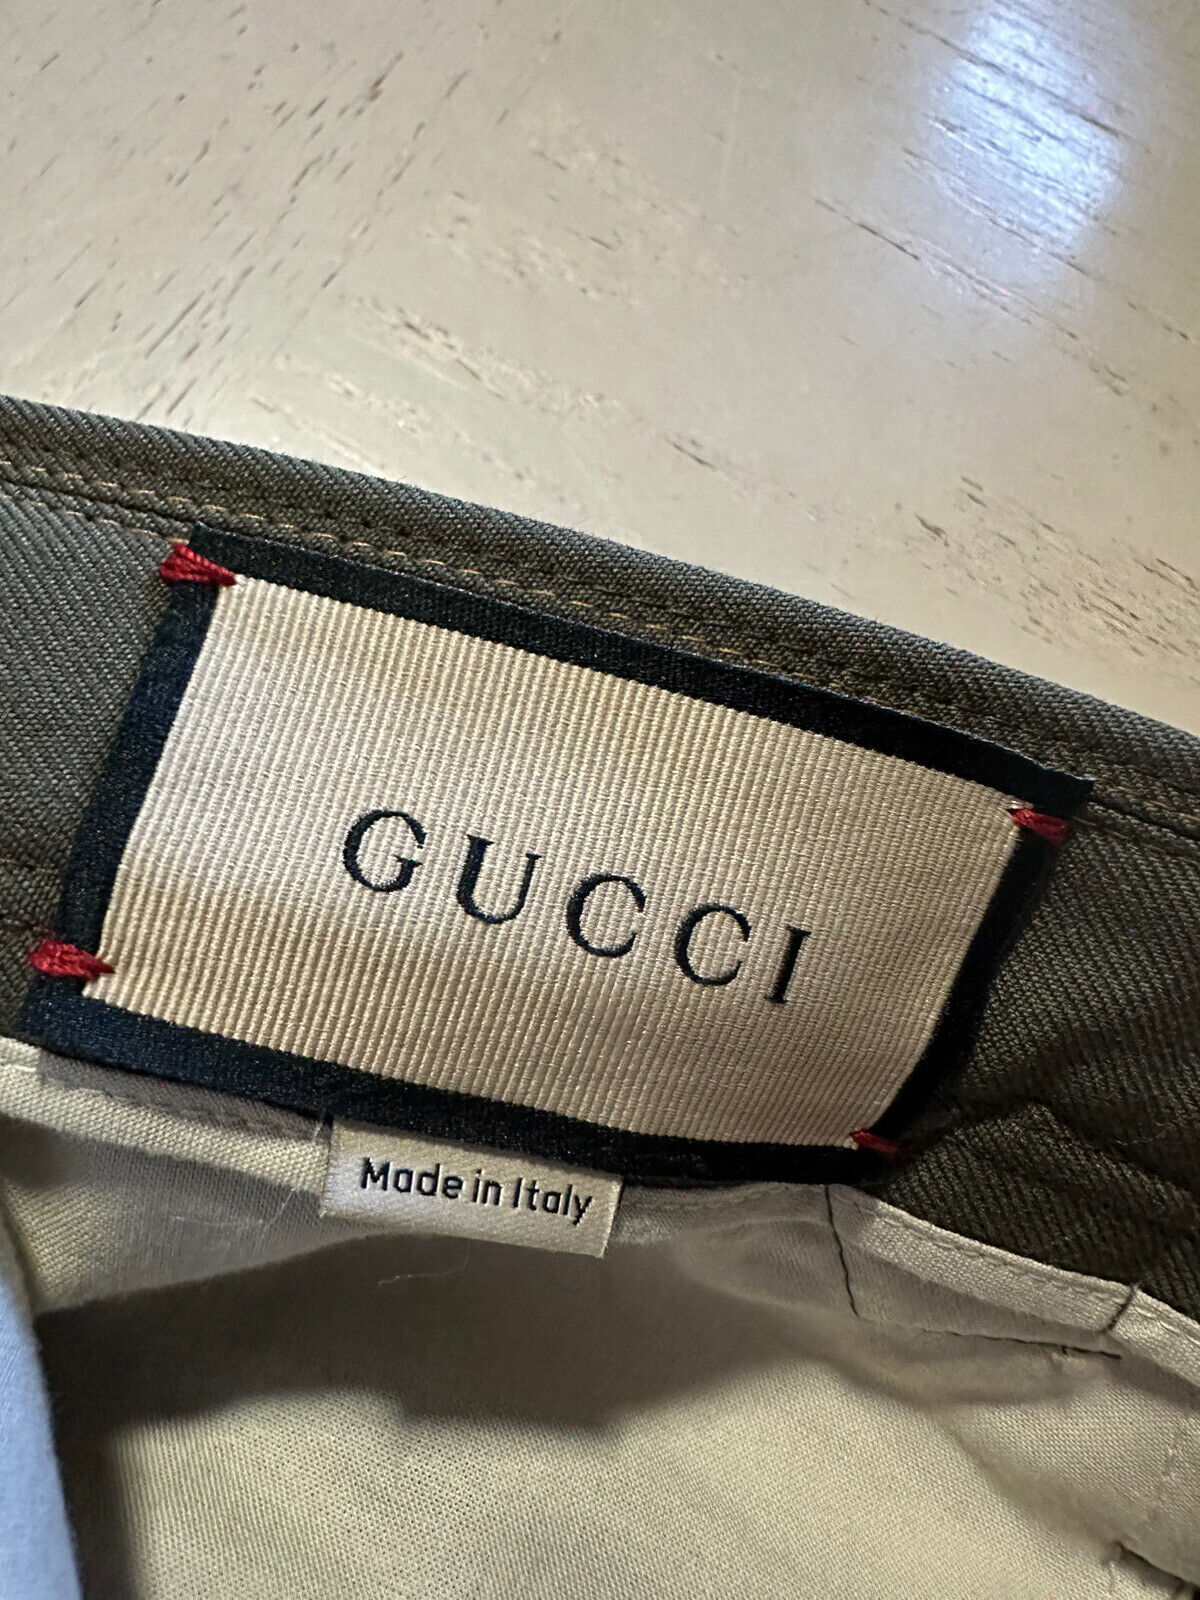 NWT $1200 Gucci Men’s Dress Pants Green 32 US ( 48 Eu ) Italy